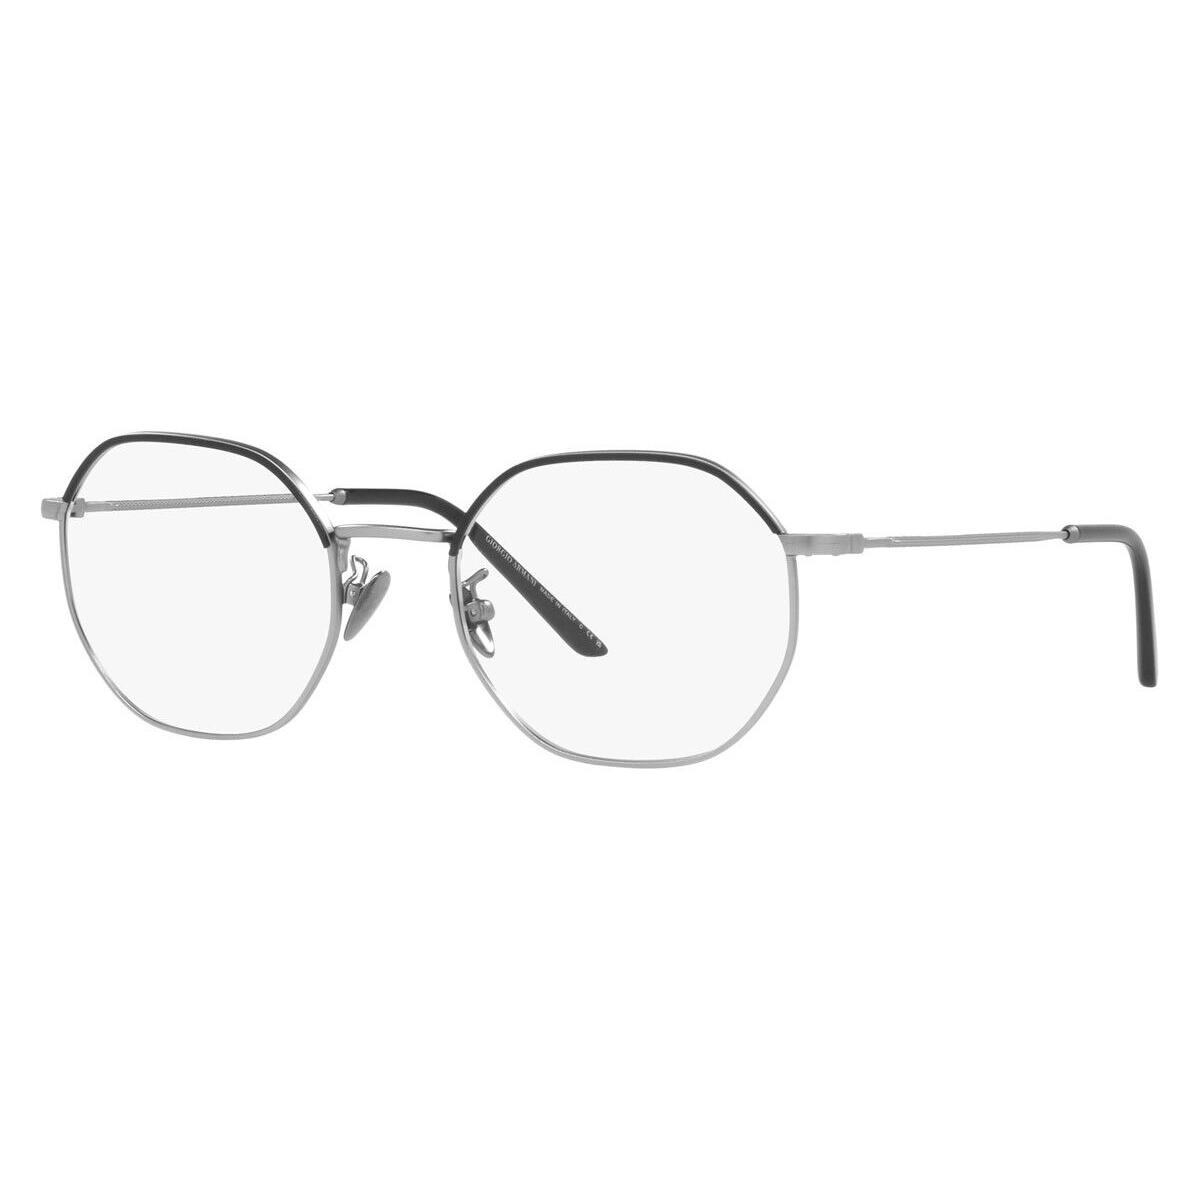 Giorgio Armani AR5130J Eyeglasses Matte Gunmetal/black 52mm